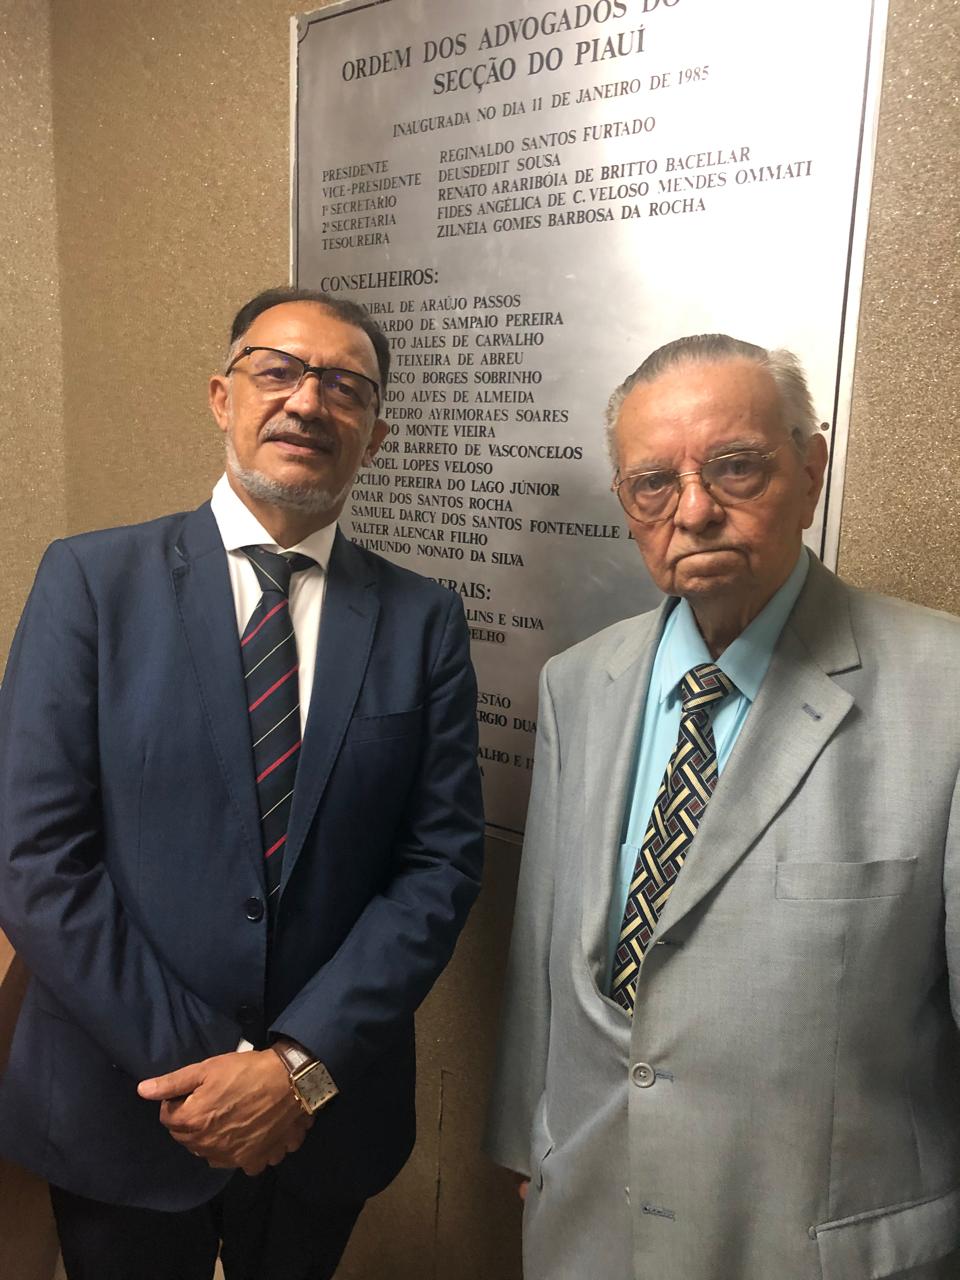 Advogado Jacinto Teles e o ex-presidente e conselheiro federal da OAB, Reginaldo Santos Furtado; logo mais receberá a Comenda Coelho Rodrigues. Na foto vê-se a placa de inauguração da OAB-PI, em 1985.